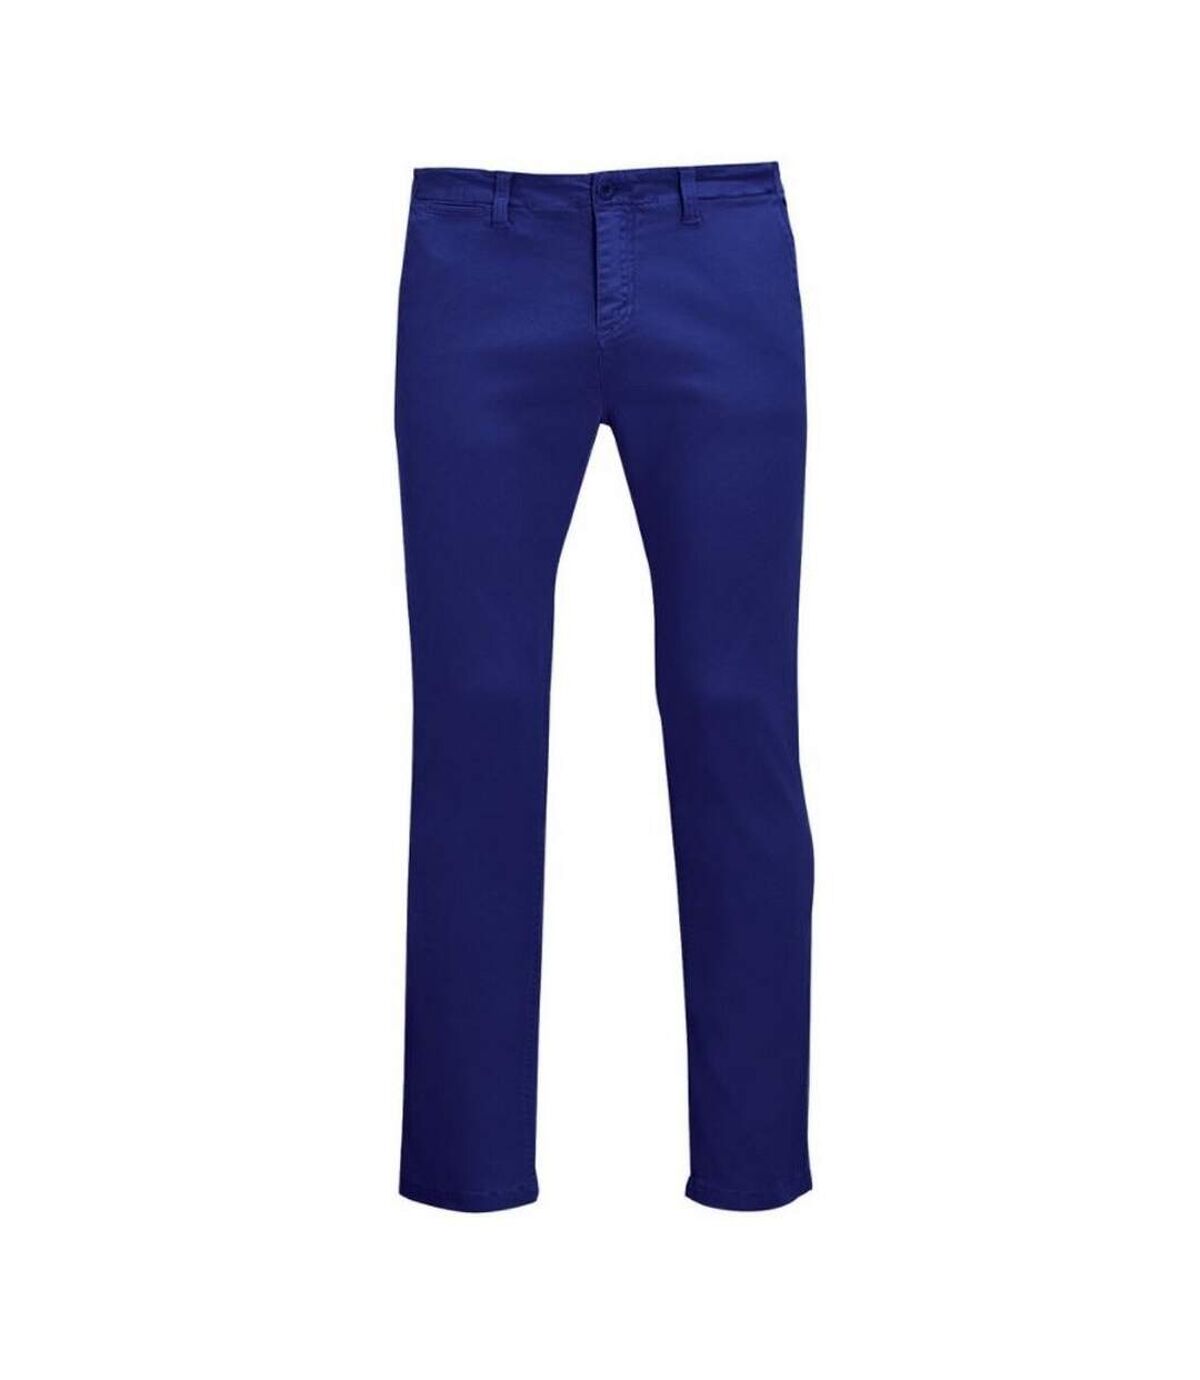 SOLS - Pantalon JULES - Homme (Bleu) - UTPC2576